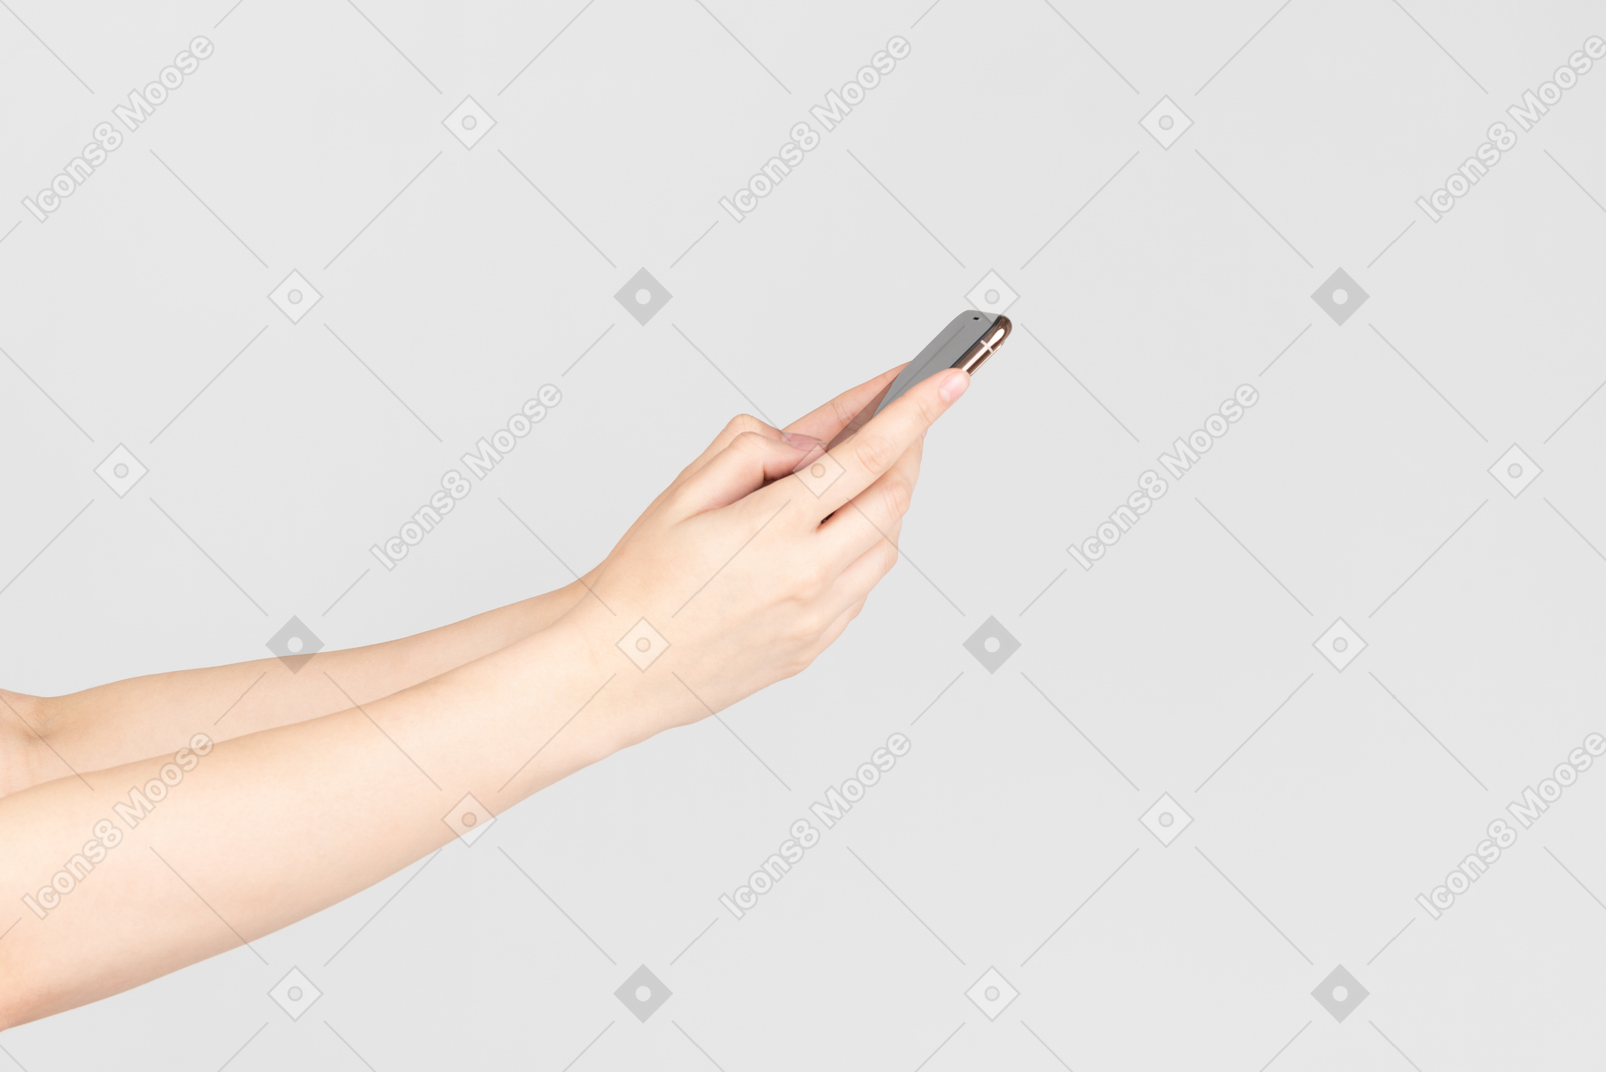 スマートフォンを保持している女性の手